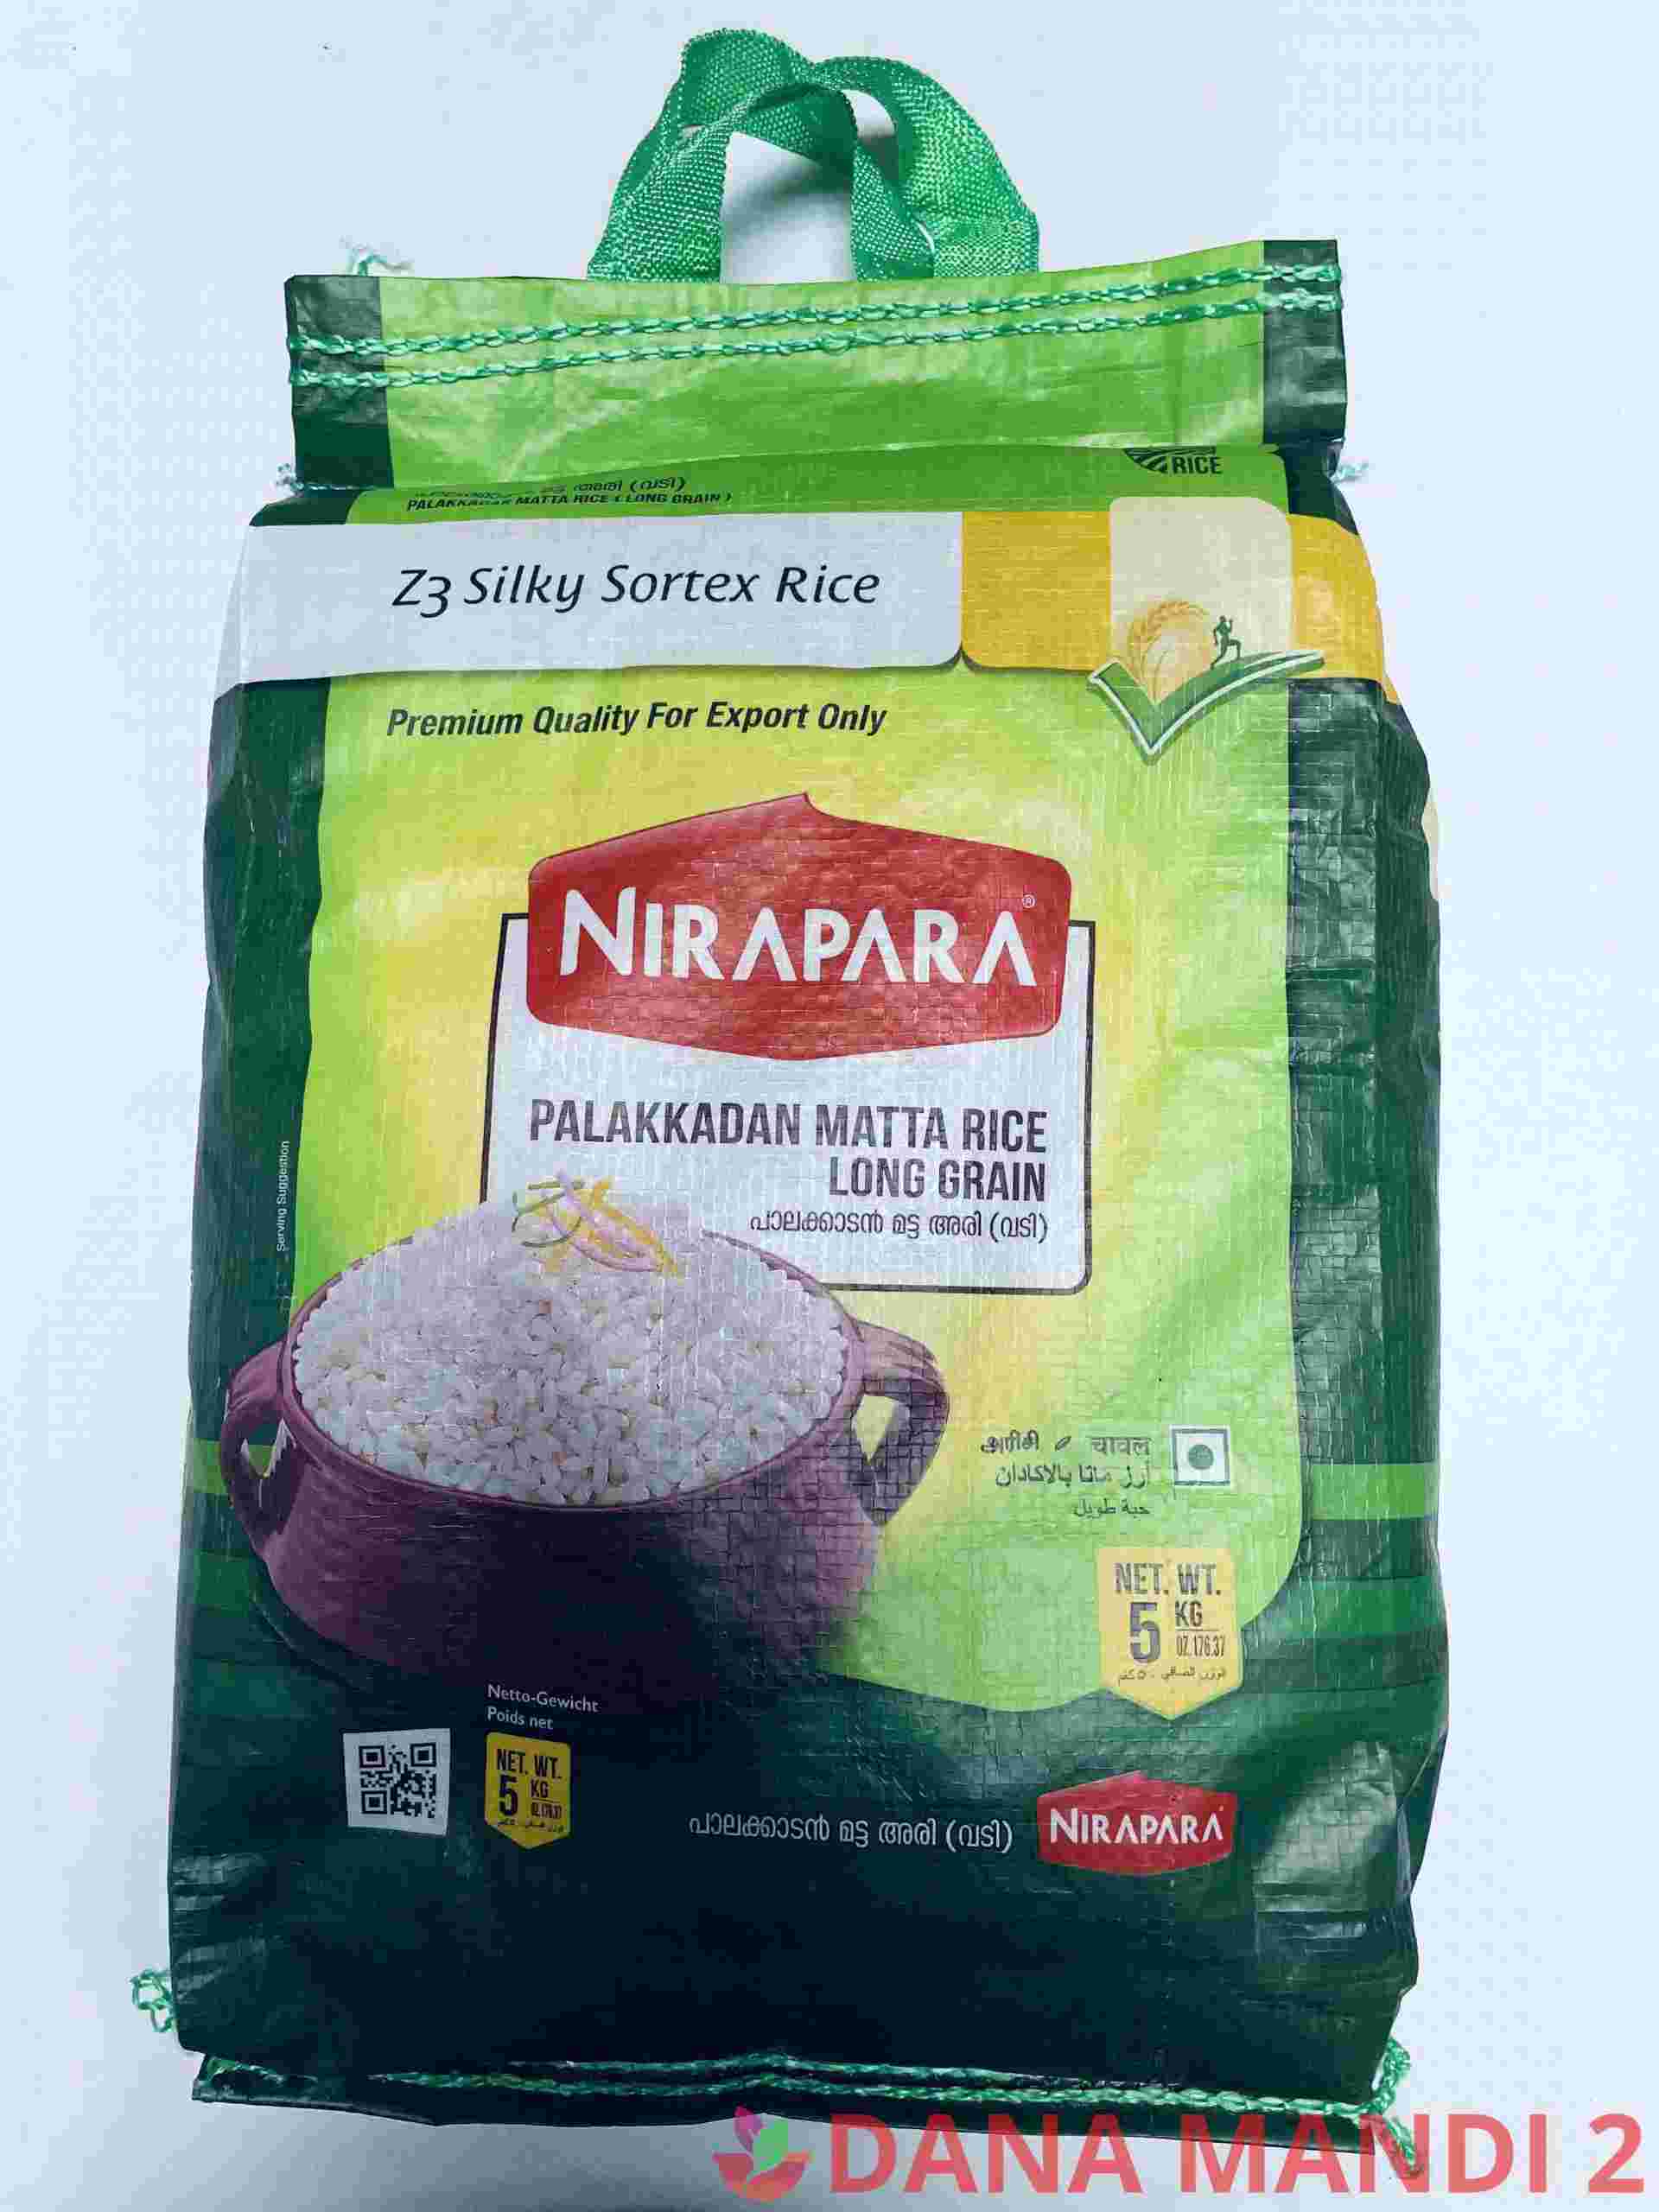 Nirapara Palakkadan Matta Rice Long Grain Rice